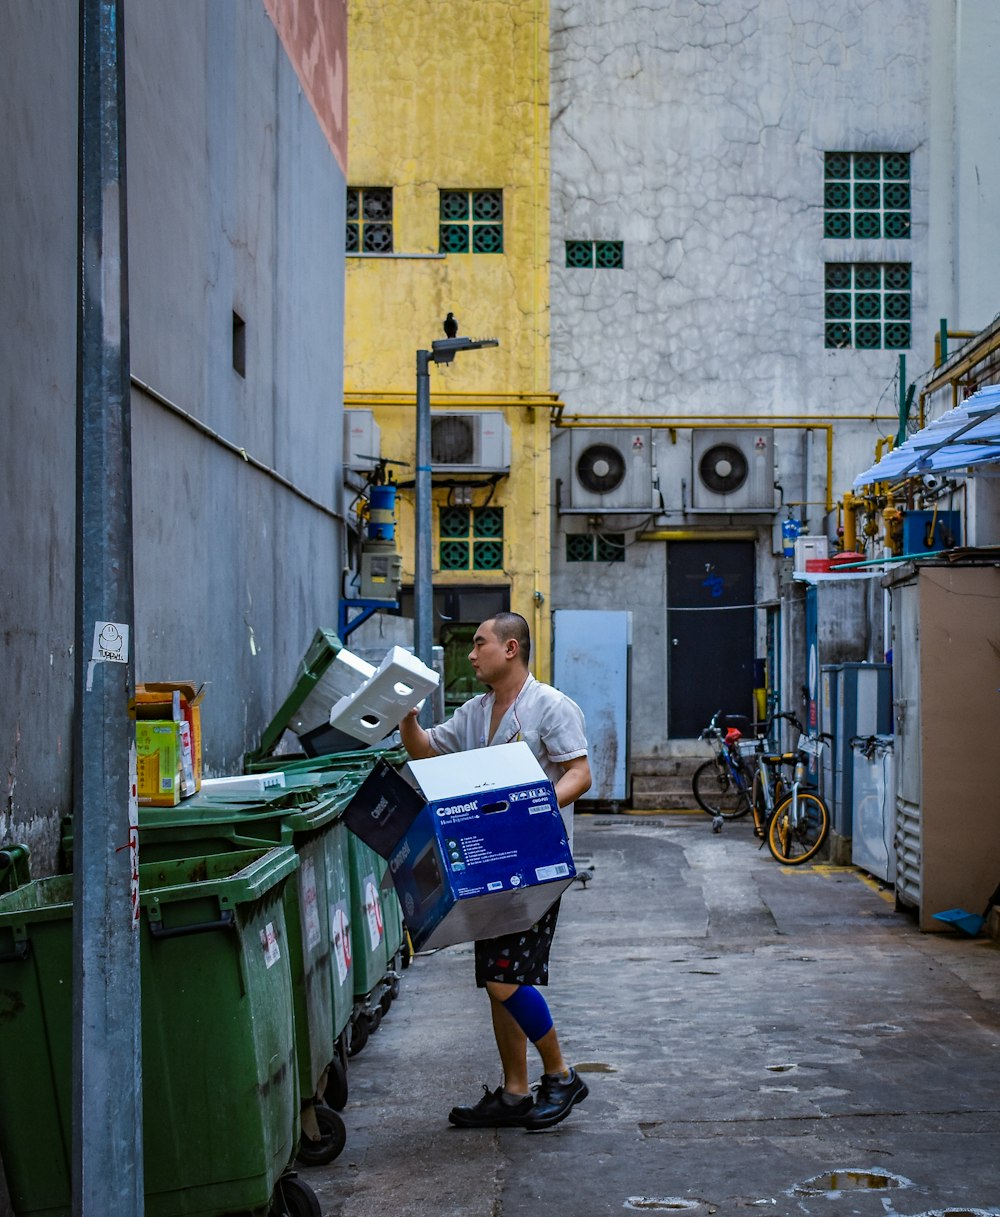 homme en chemise boutonnée grise tenant une boîte bleue près d’une poubelle verte